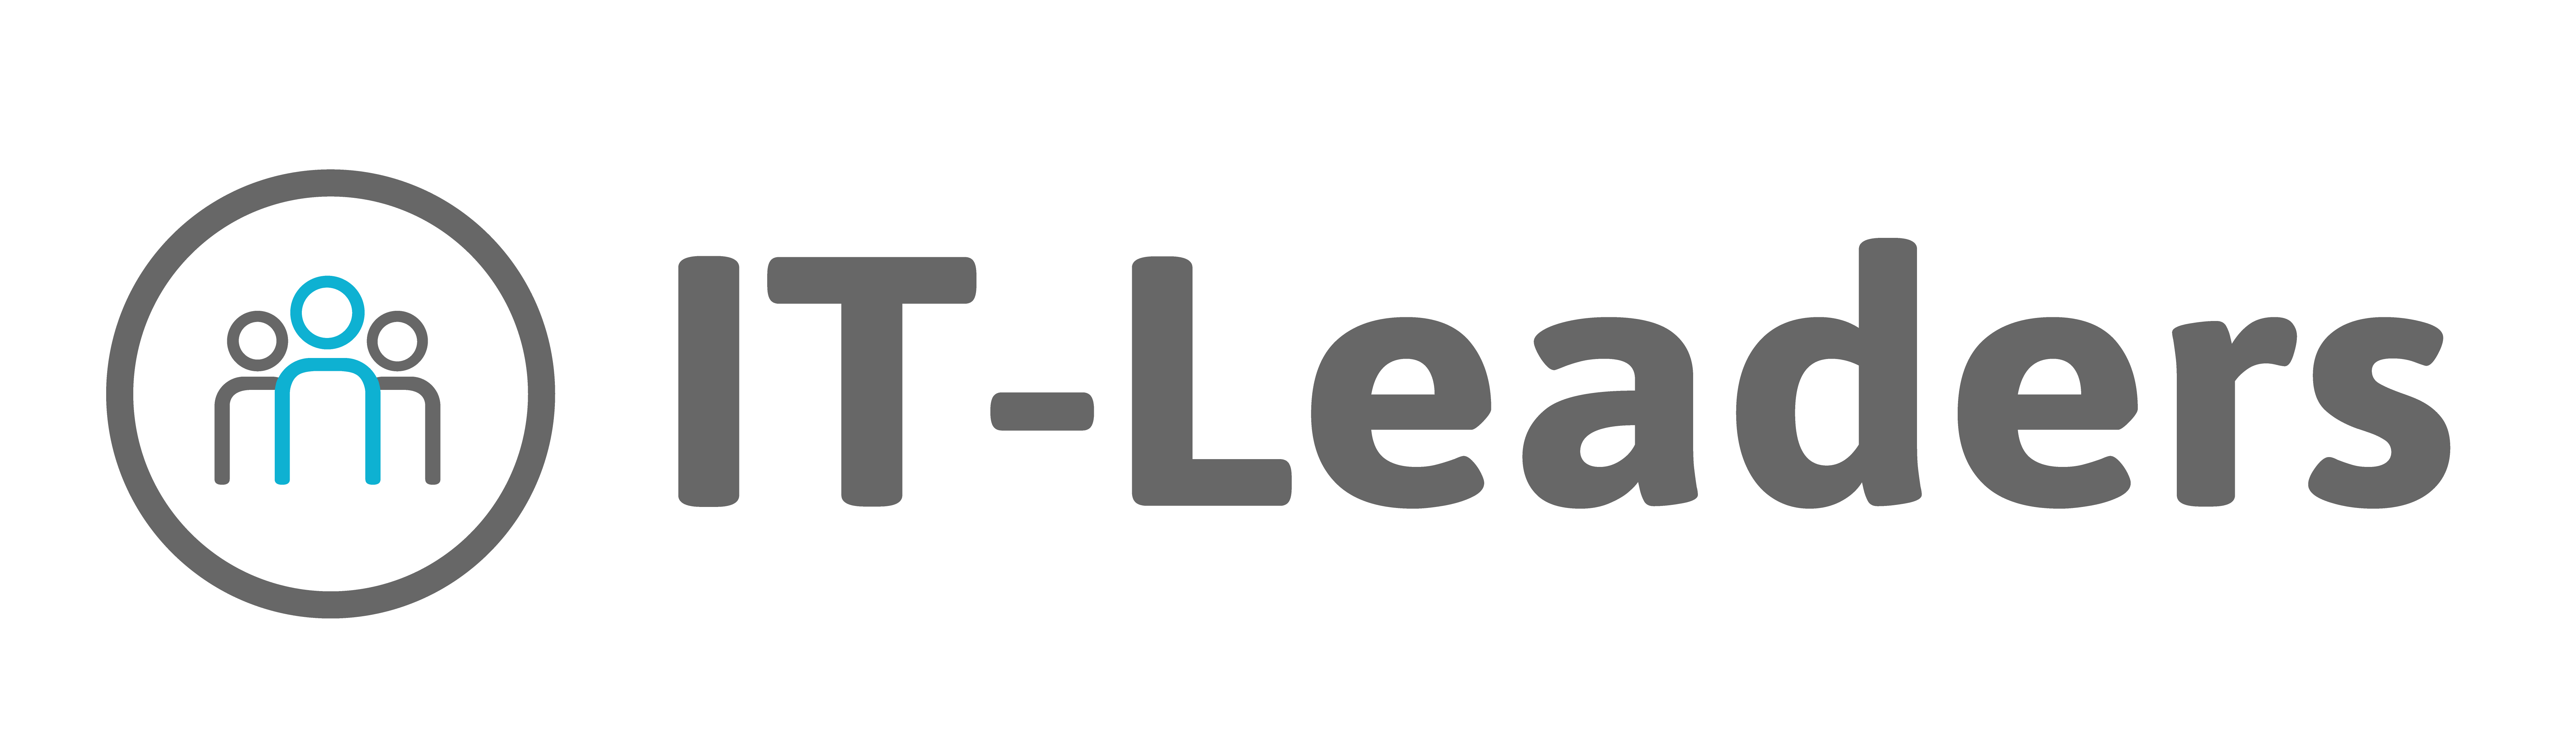 it-leaders-logo